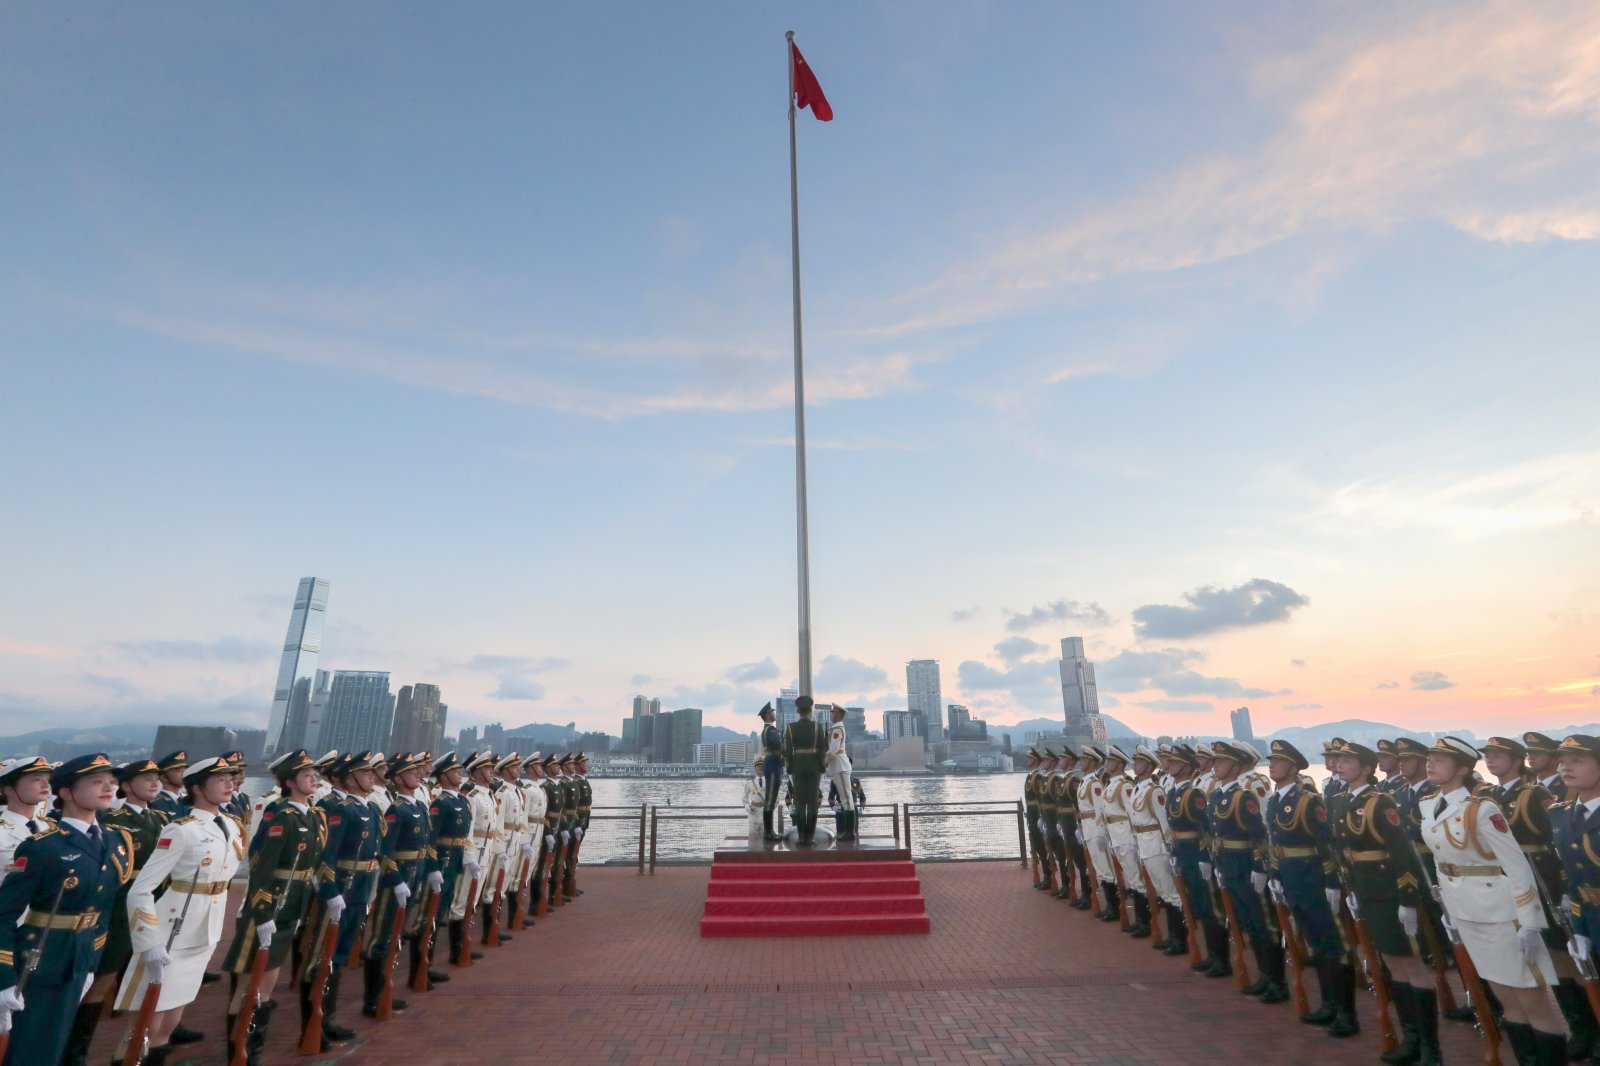 8月1日，為慶祝建軍95周年，中國人民解放軍駐香港部隊在中區軍用碼頭舉行升國旗儀式。中新社